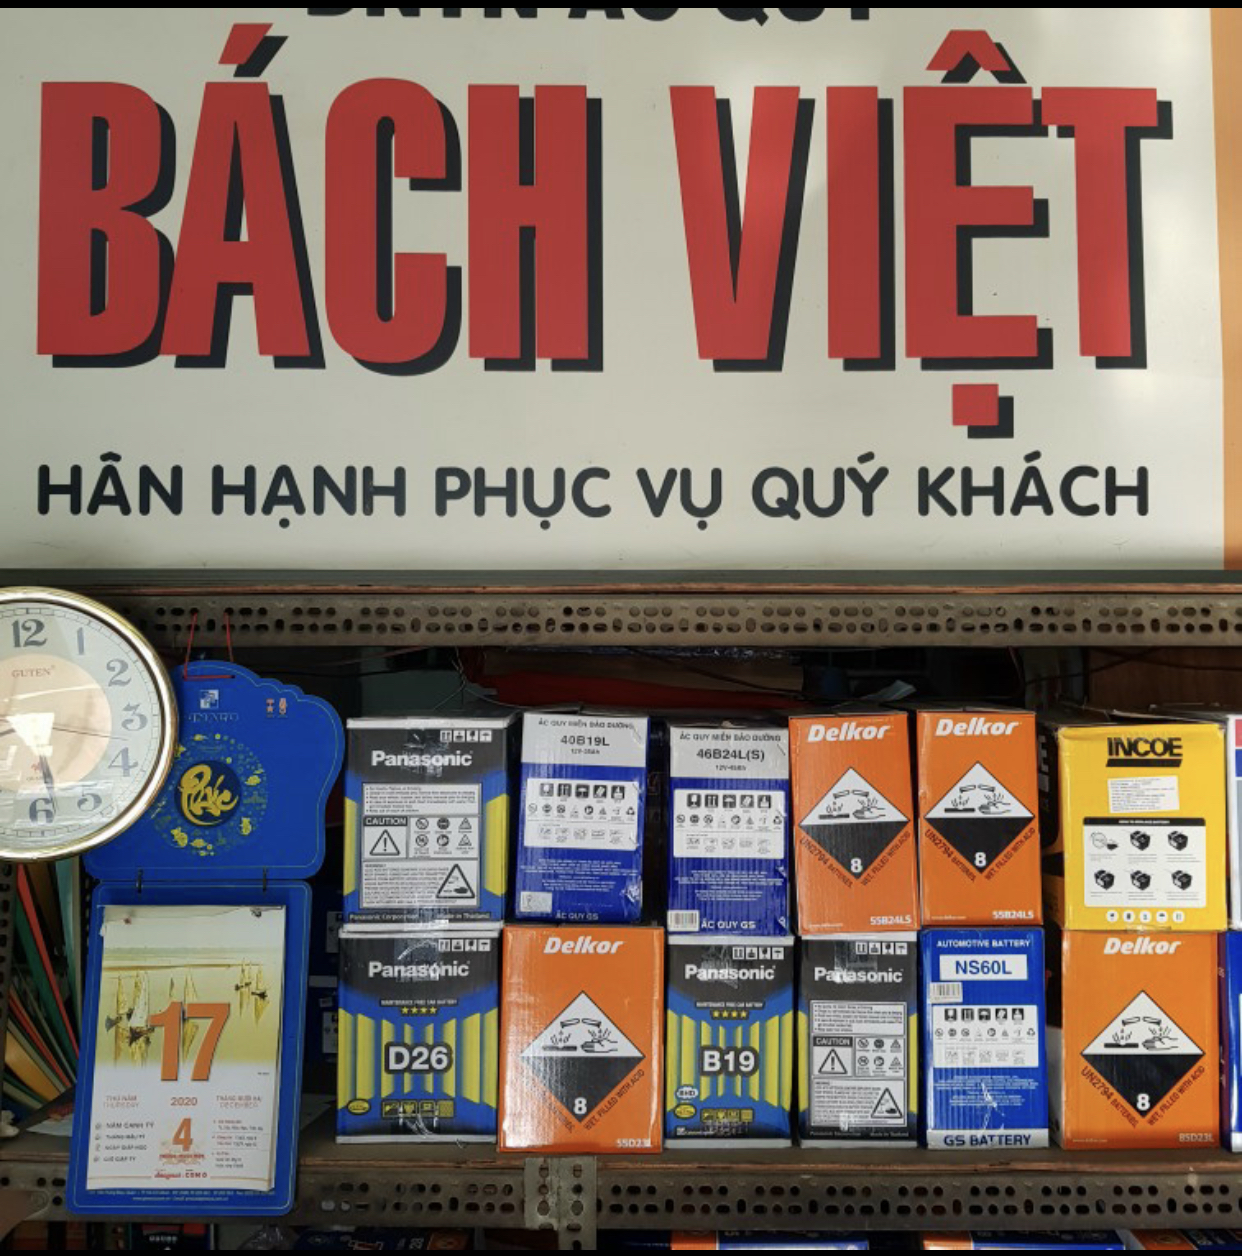 Bách Việt